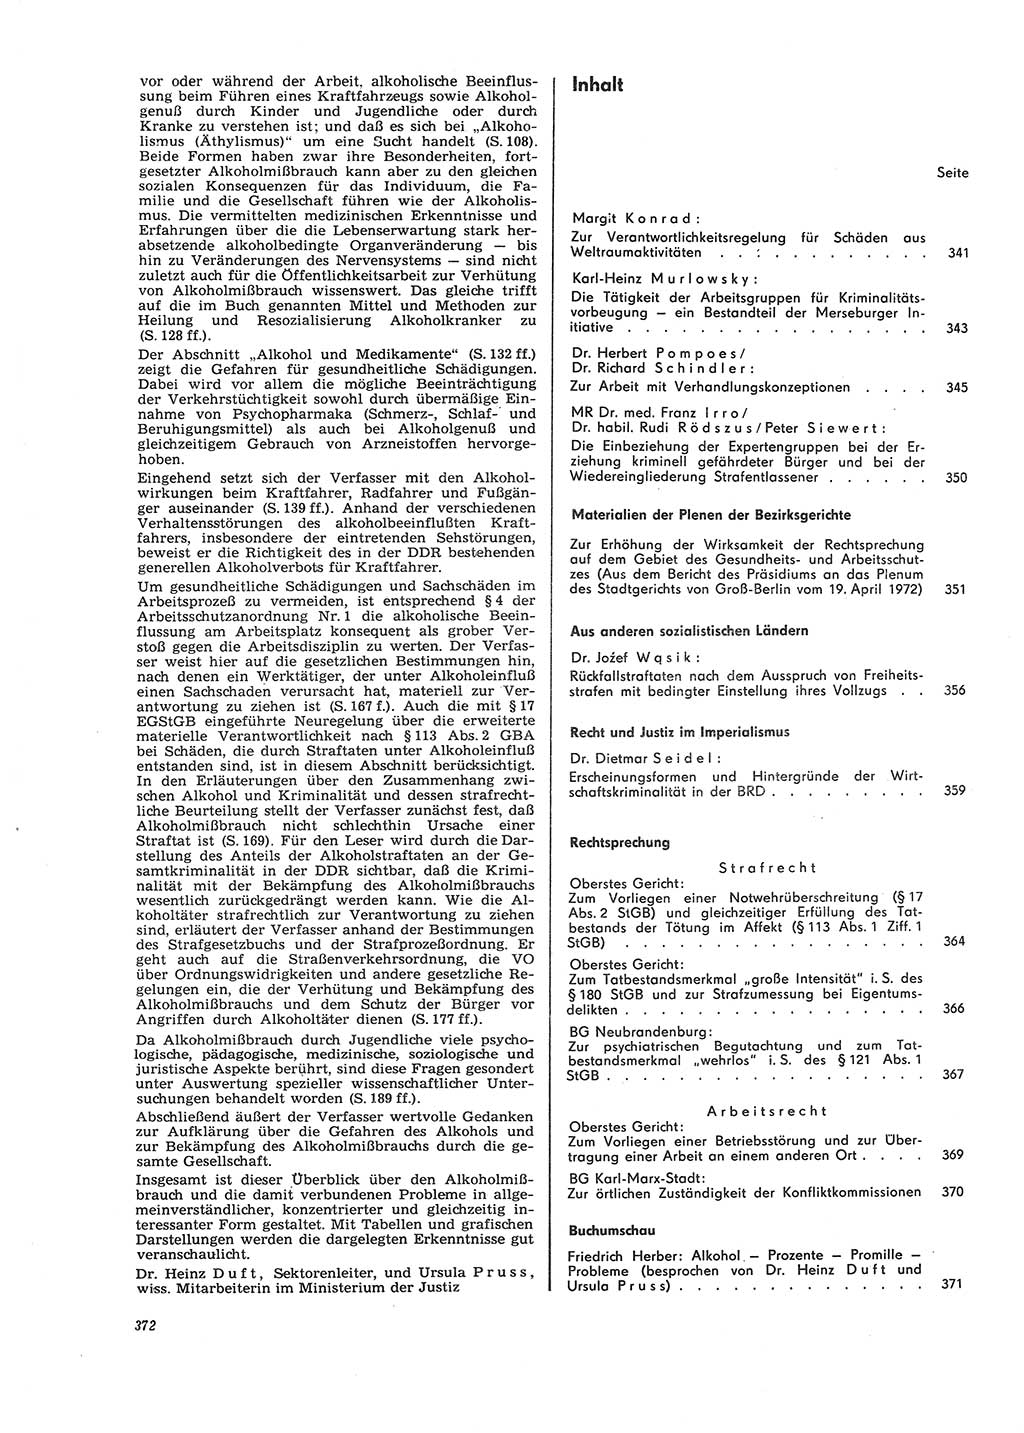 Neue Justiz (NJ), Zeitschrift für Recht und Rechtswissenschaft [Deutsche Demokratische Republik (DDR)], 26. Jahrgang 1972, Seite 372 (NJ DDR 1972, S. 372)